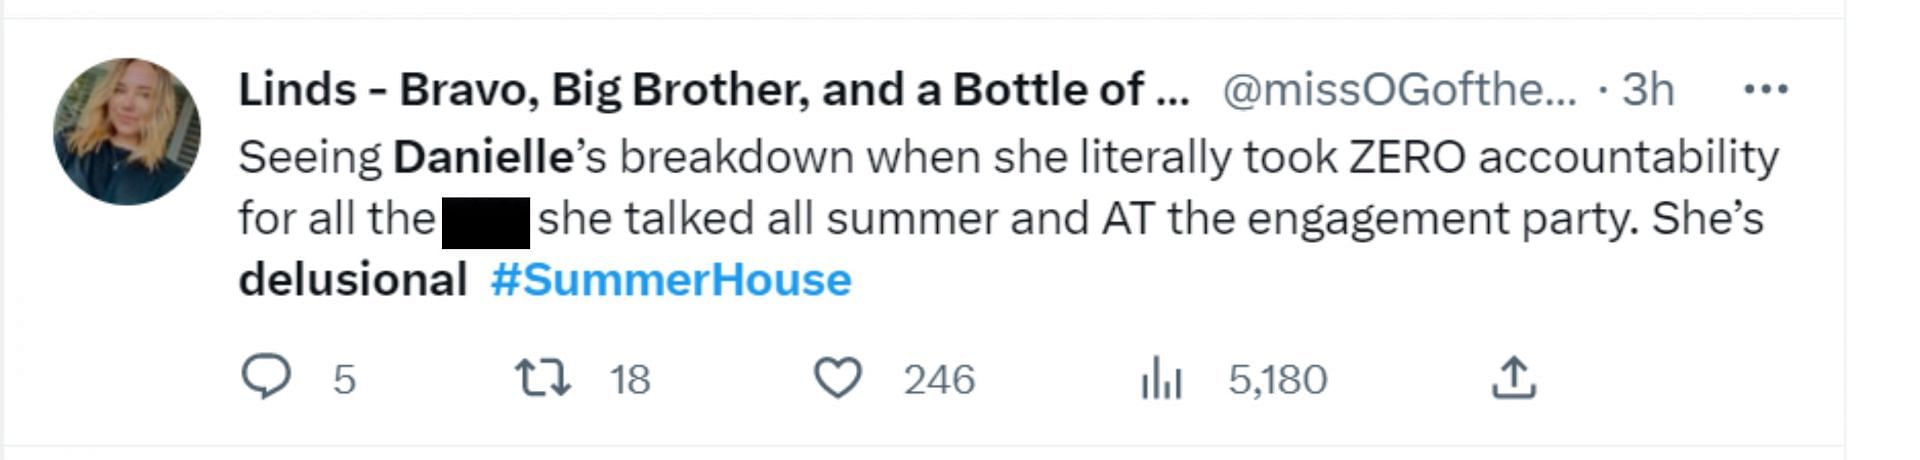 Fans slam Danielle on Summer House (Image via Twitter)